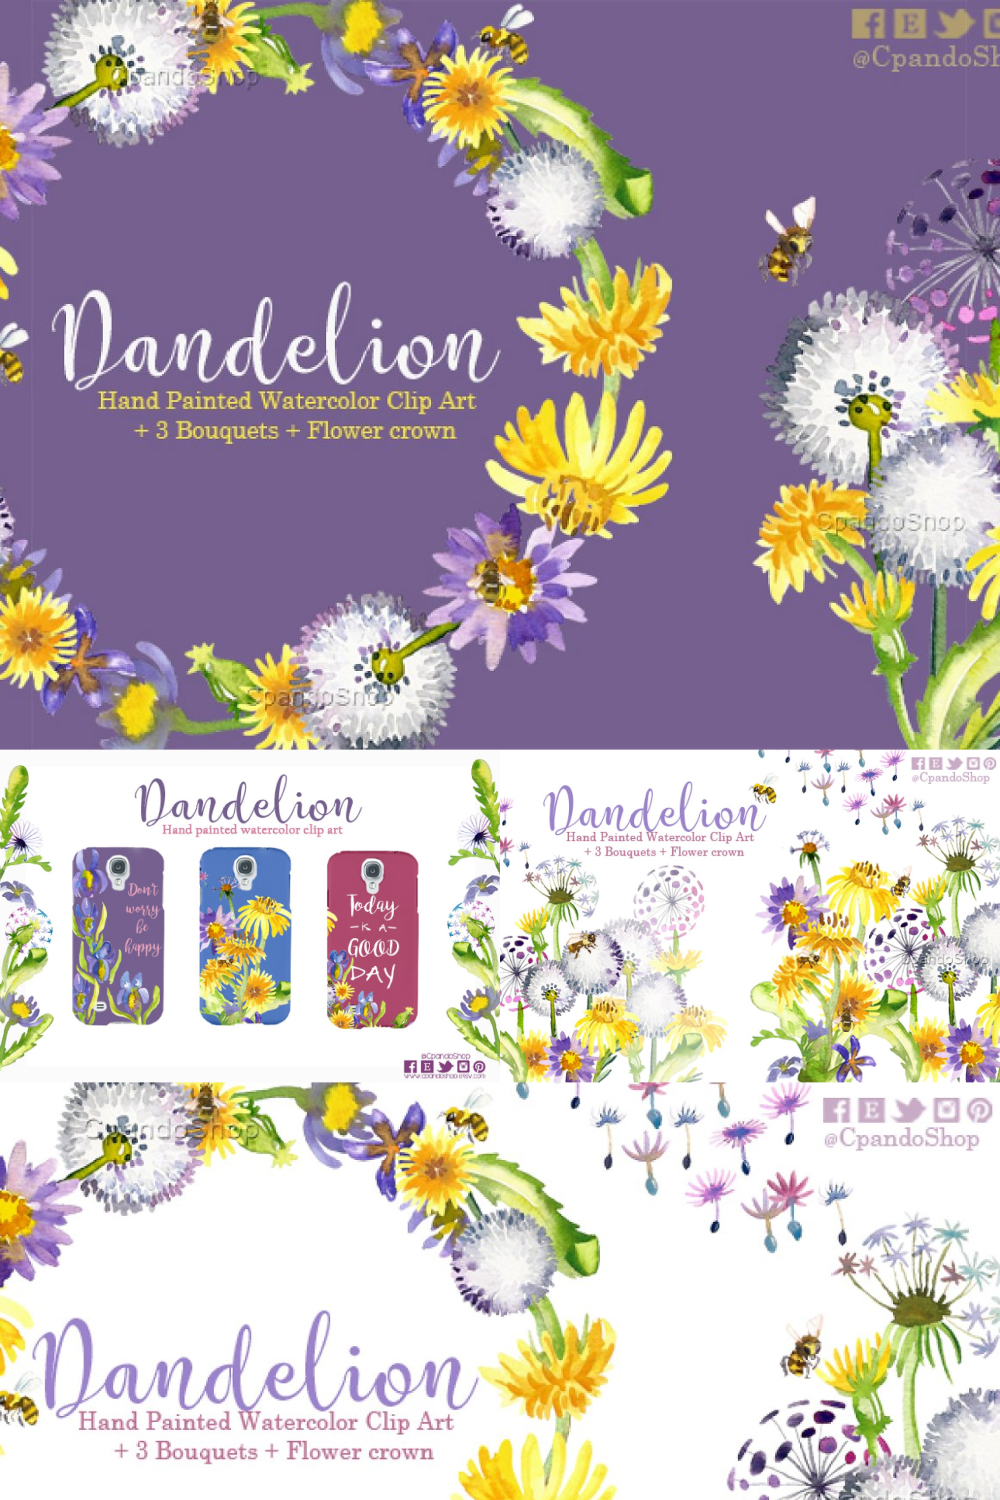 Dandelion floral watercolor clipart of pinterest.